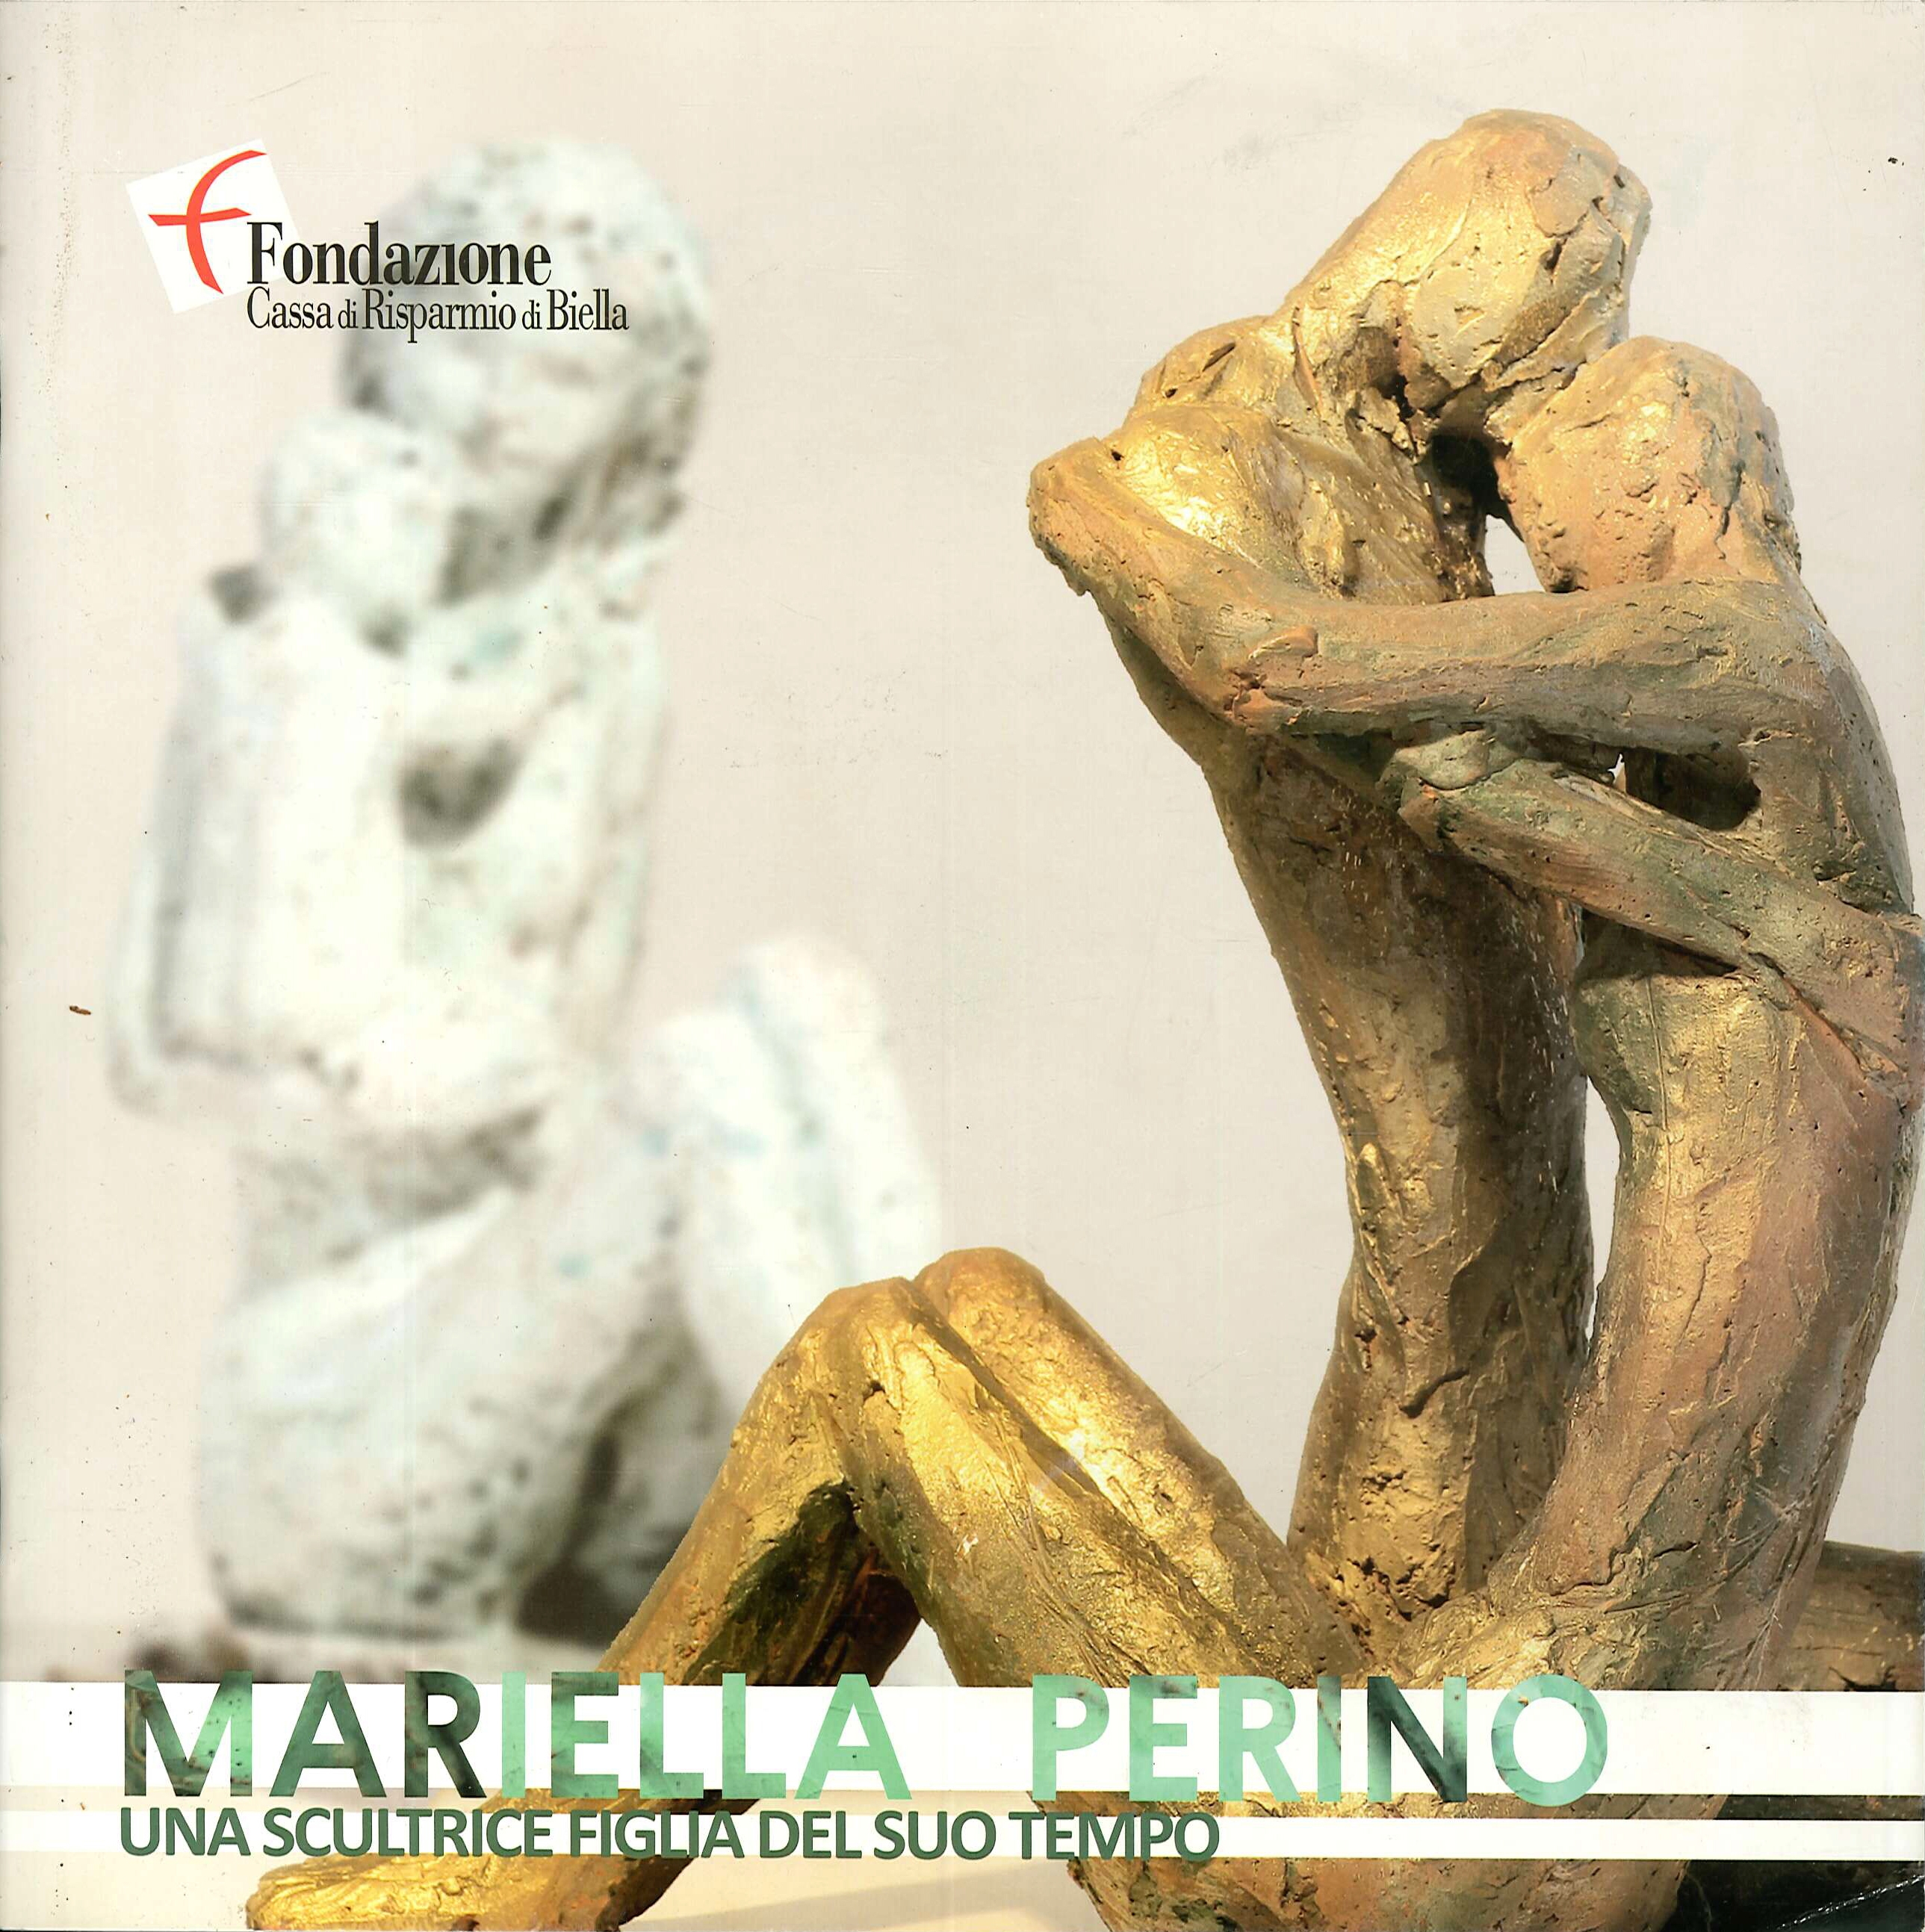 Mariella Perino. Una scultrice figlia del suo tempo - Afbeelding 1 van 1